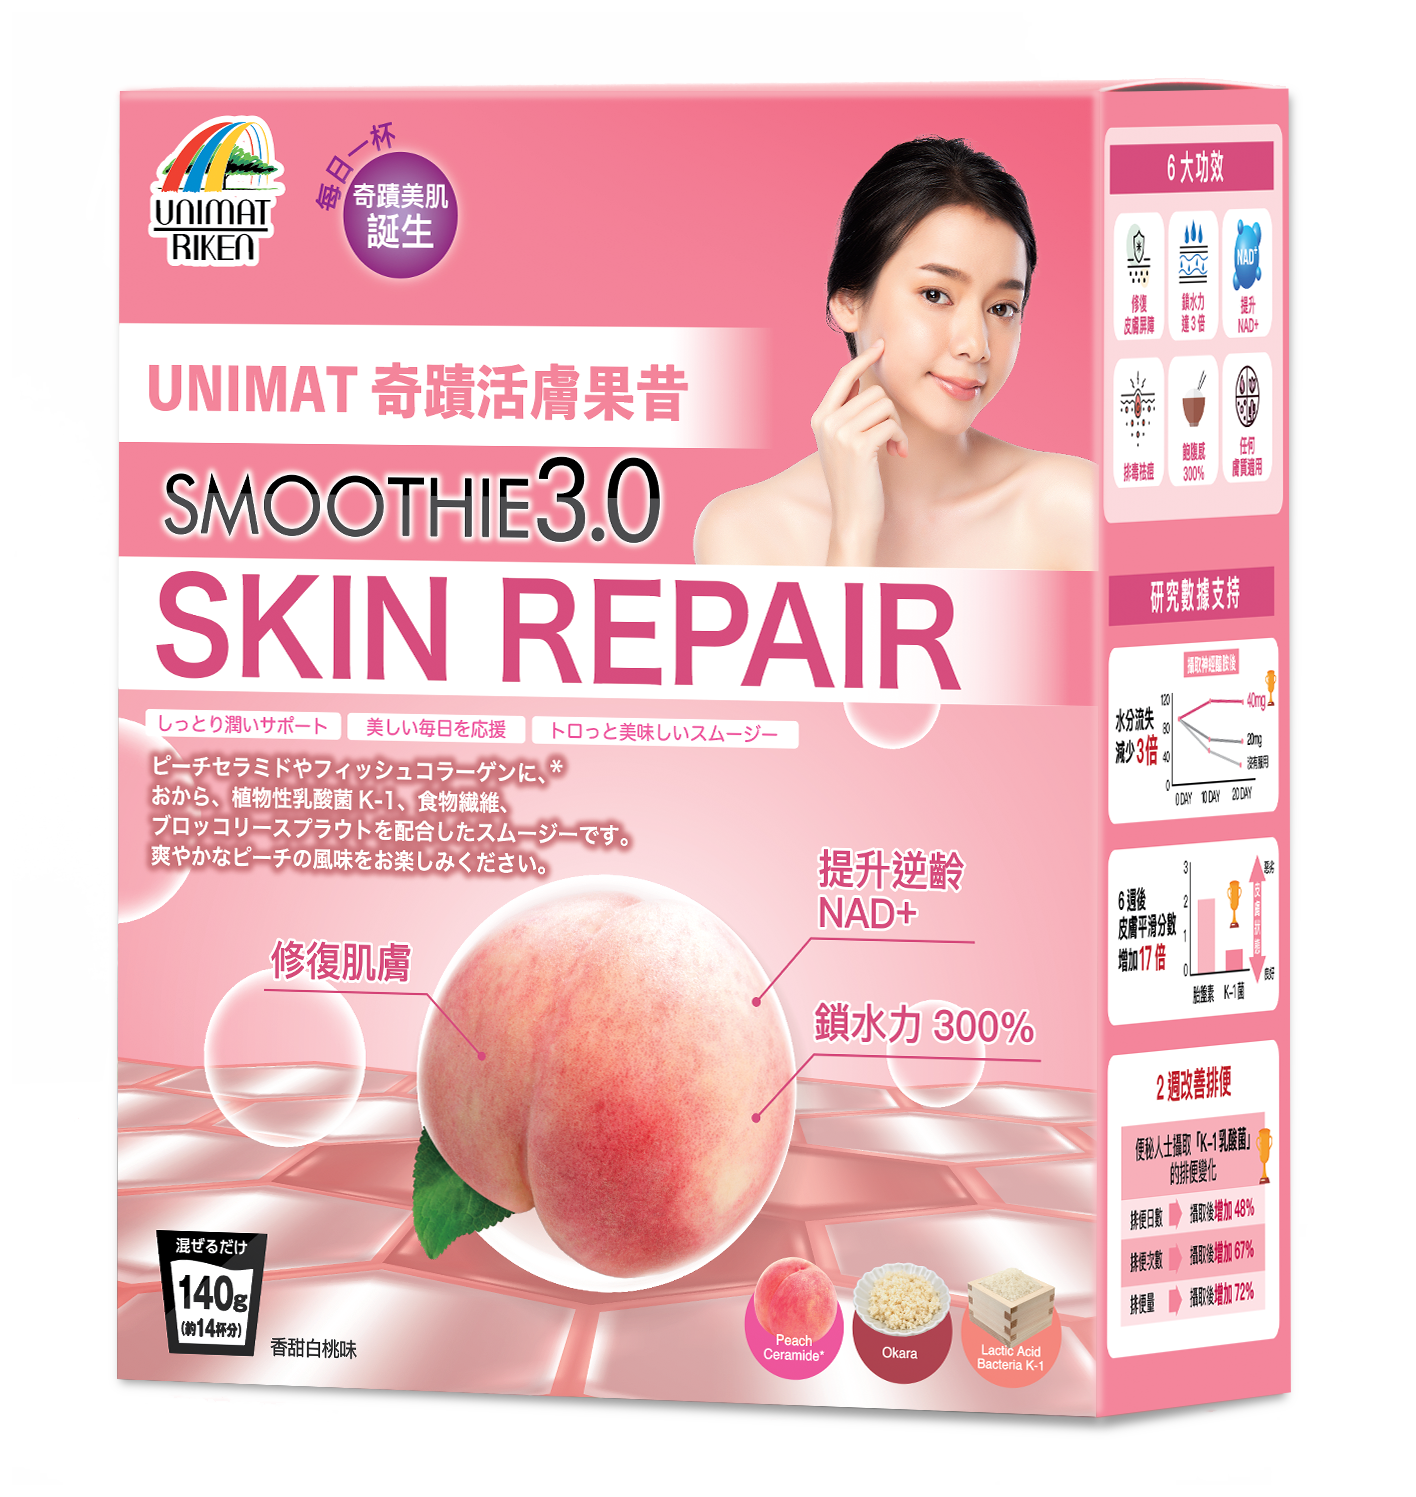 Peach Ceramide Skin Repair Super Smoothie